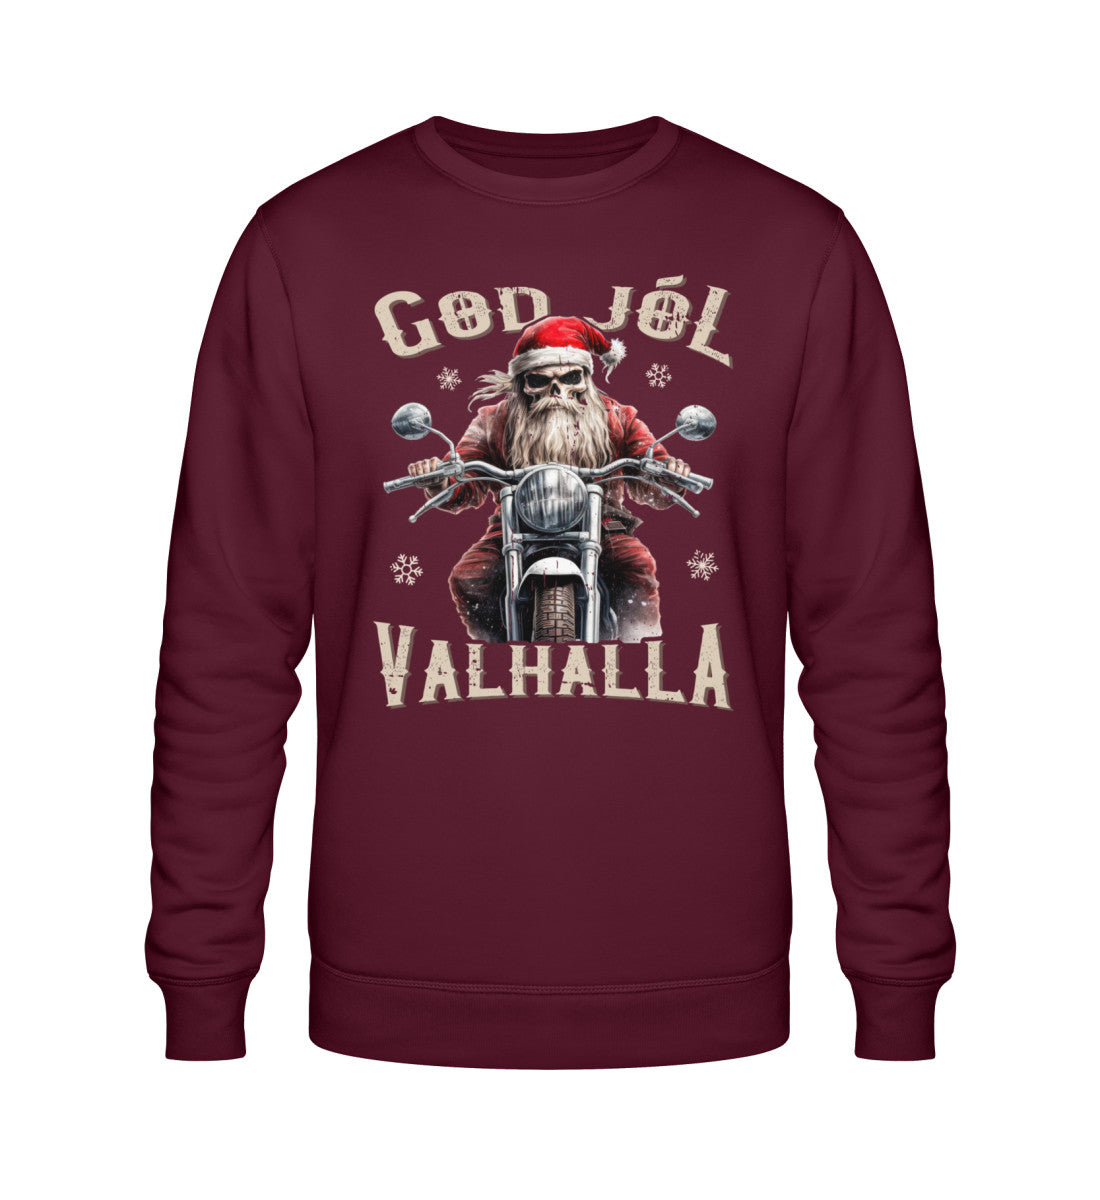 Ein Biker Sweatshirt für Motorradfahrer von Wingbikers mit dem Aufdruck, God Jól Valhalla - Wikinger auf dem Motorrad mit Weihnachtsmütze - in burgunder weinrot.